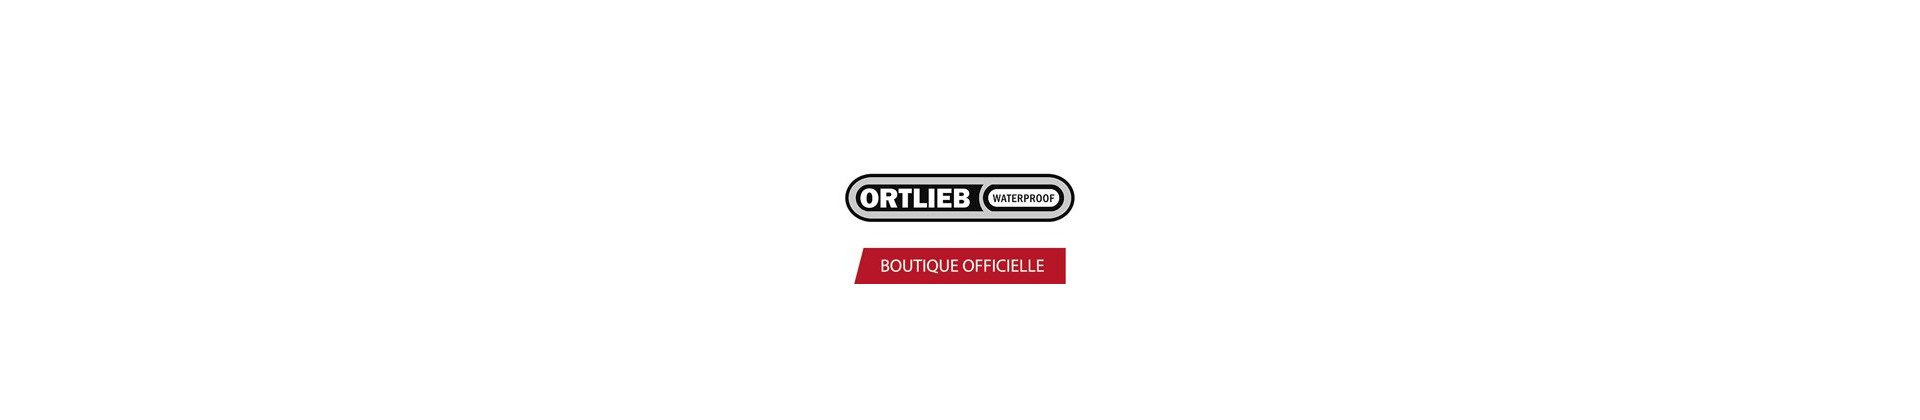 Ortlieb Shop